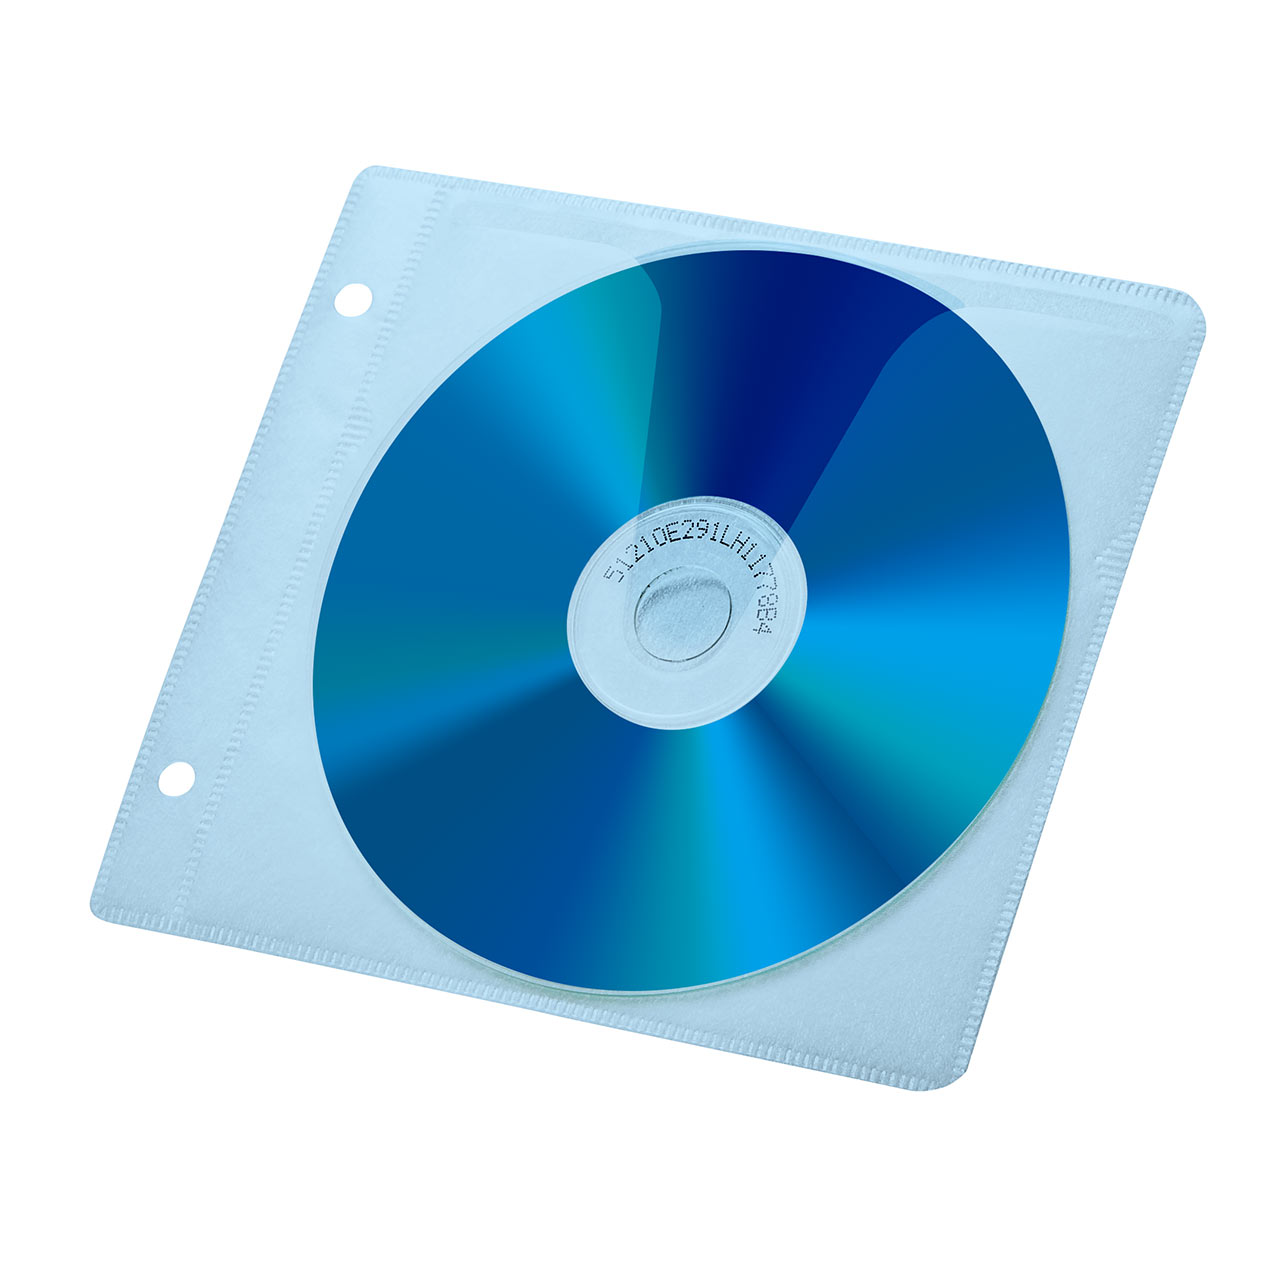  (まとめ) サンワサプライ DVD・CD不織布ケースリング穴付 インデックスカード付属 ブラック FCD-FR100BKN 1パック(100枚) 